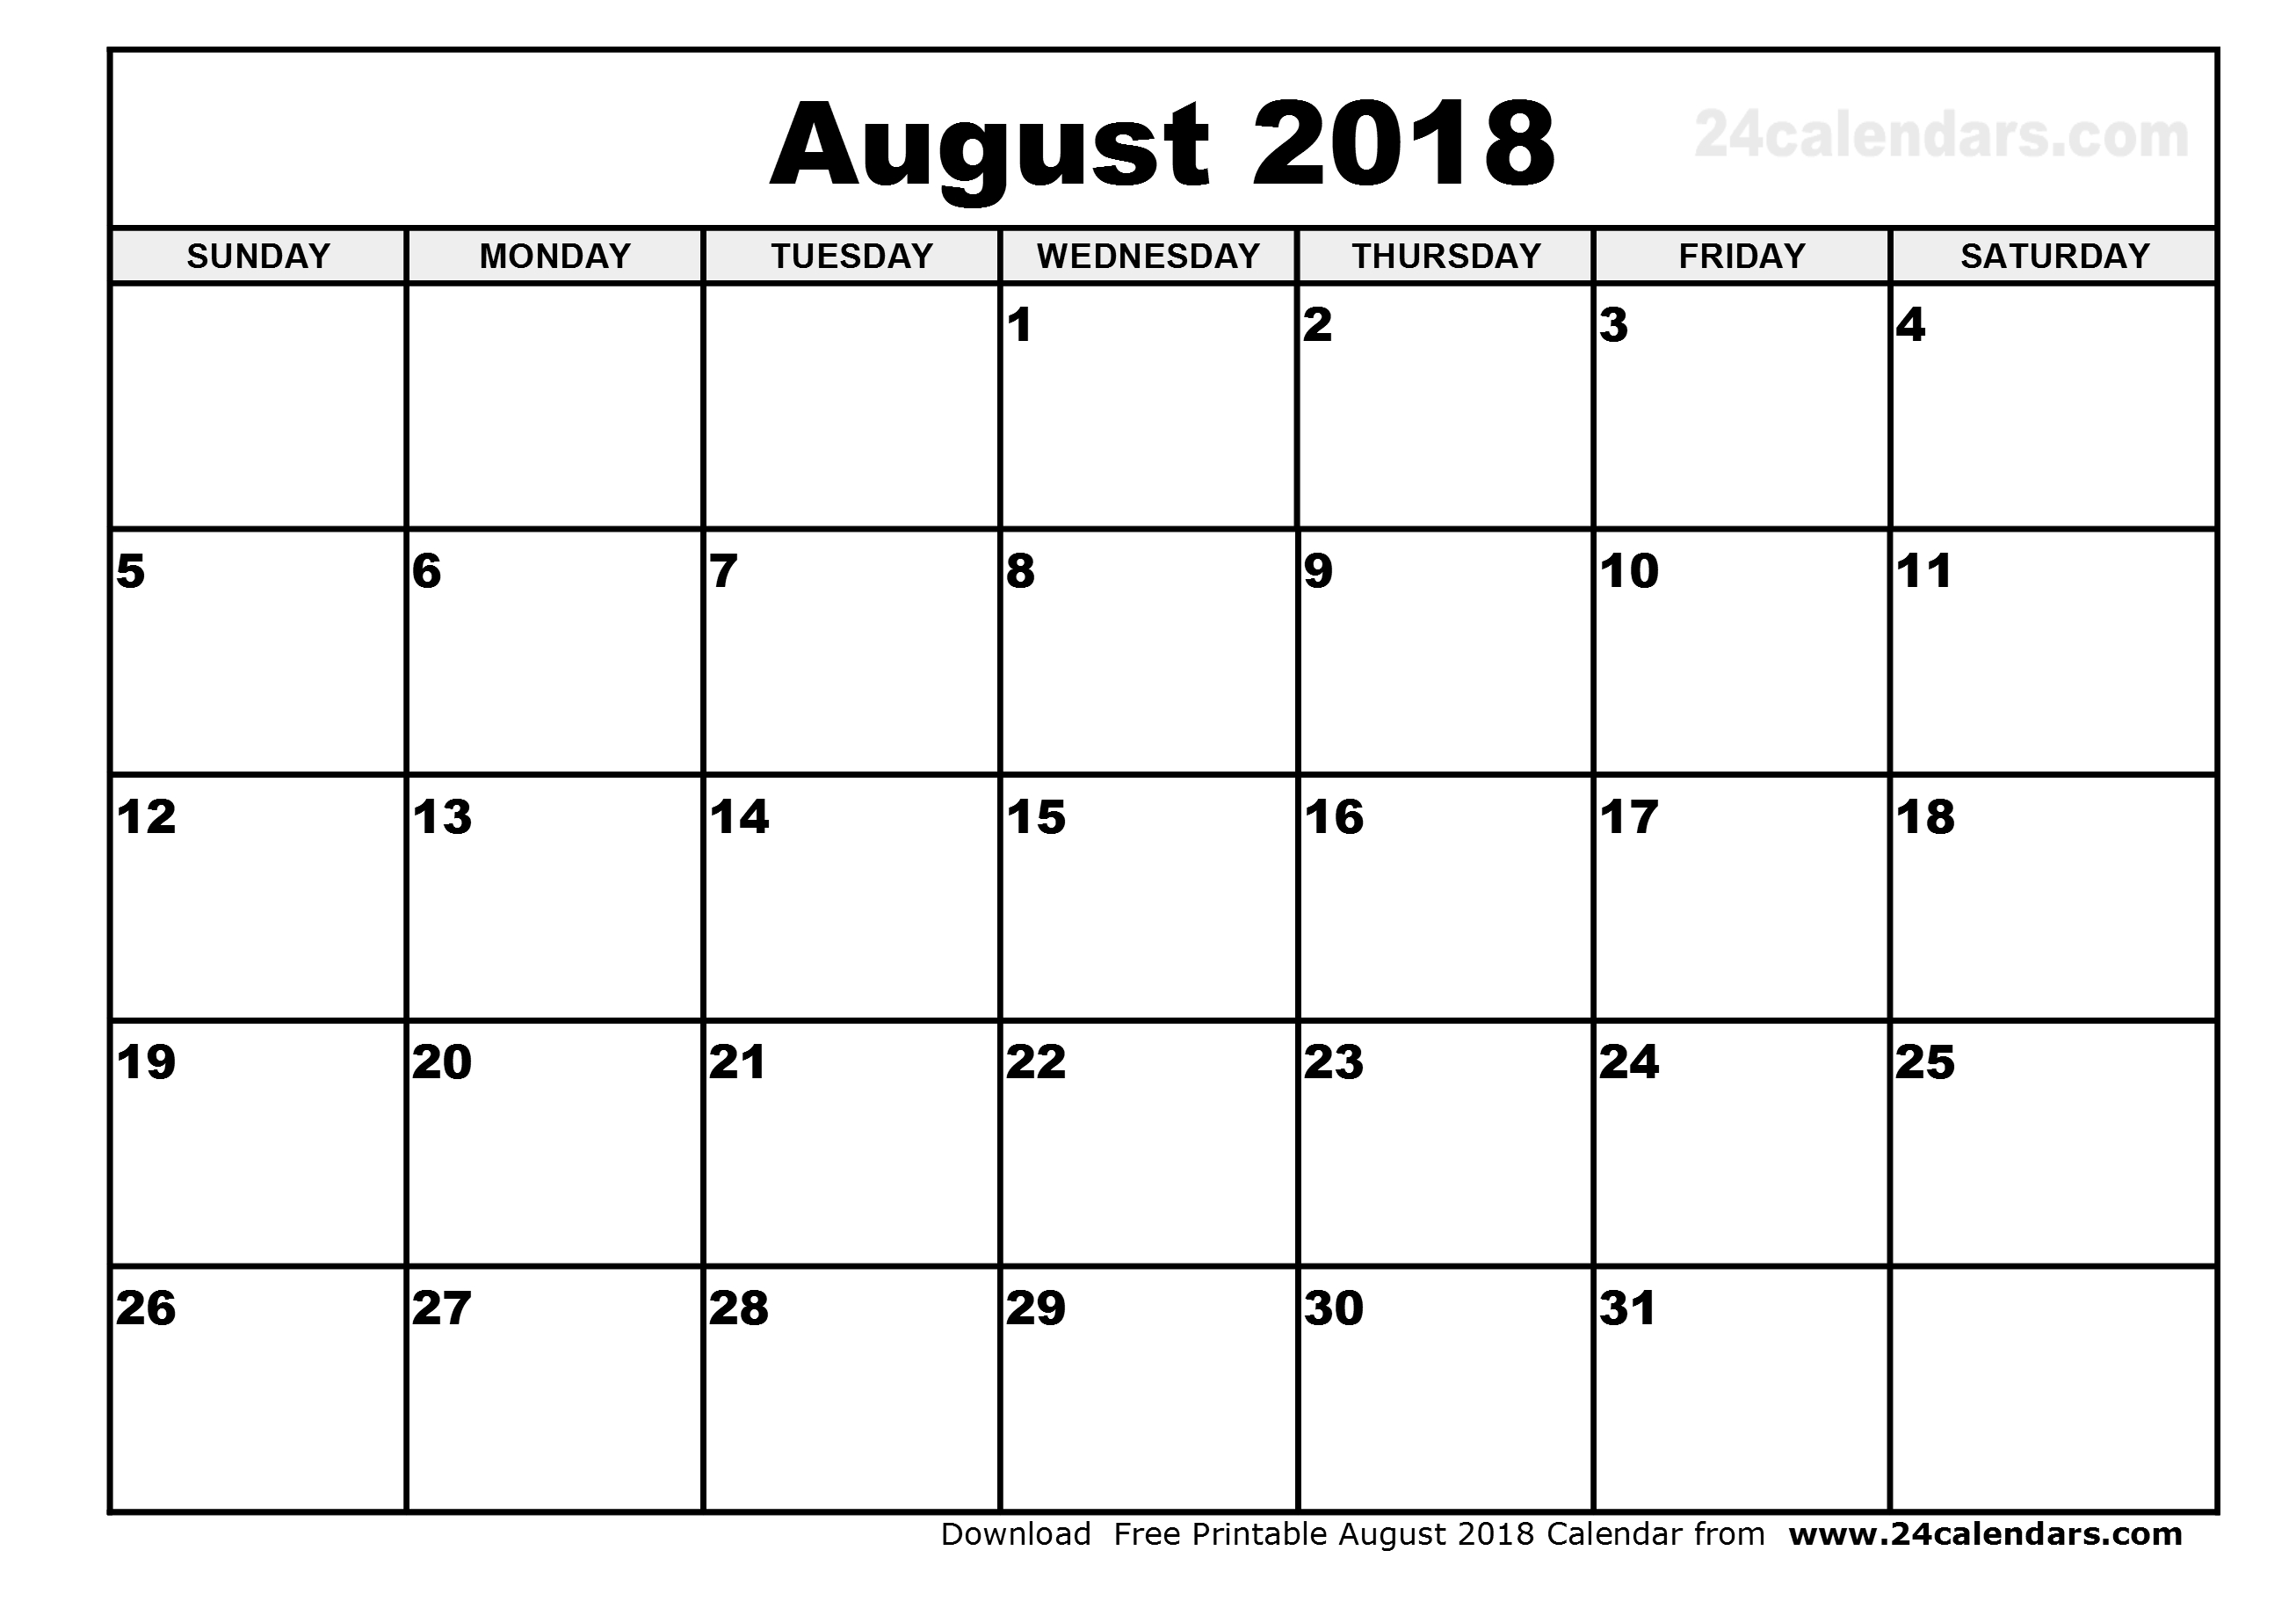 blank calendar august 2018 Targer.golden dragon.co